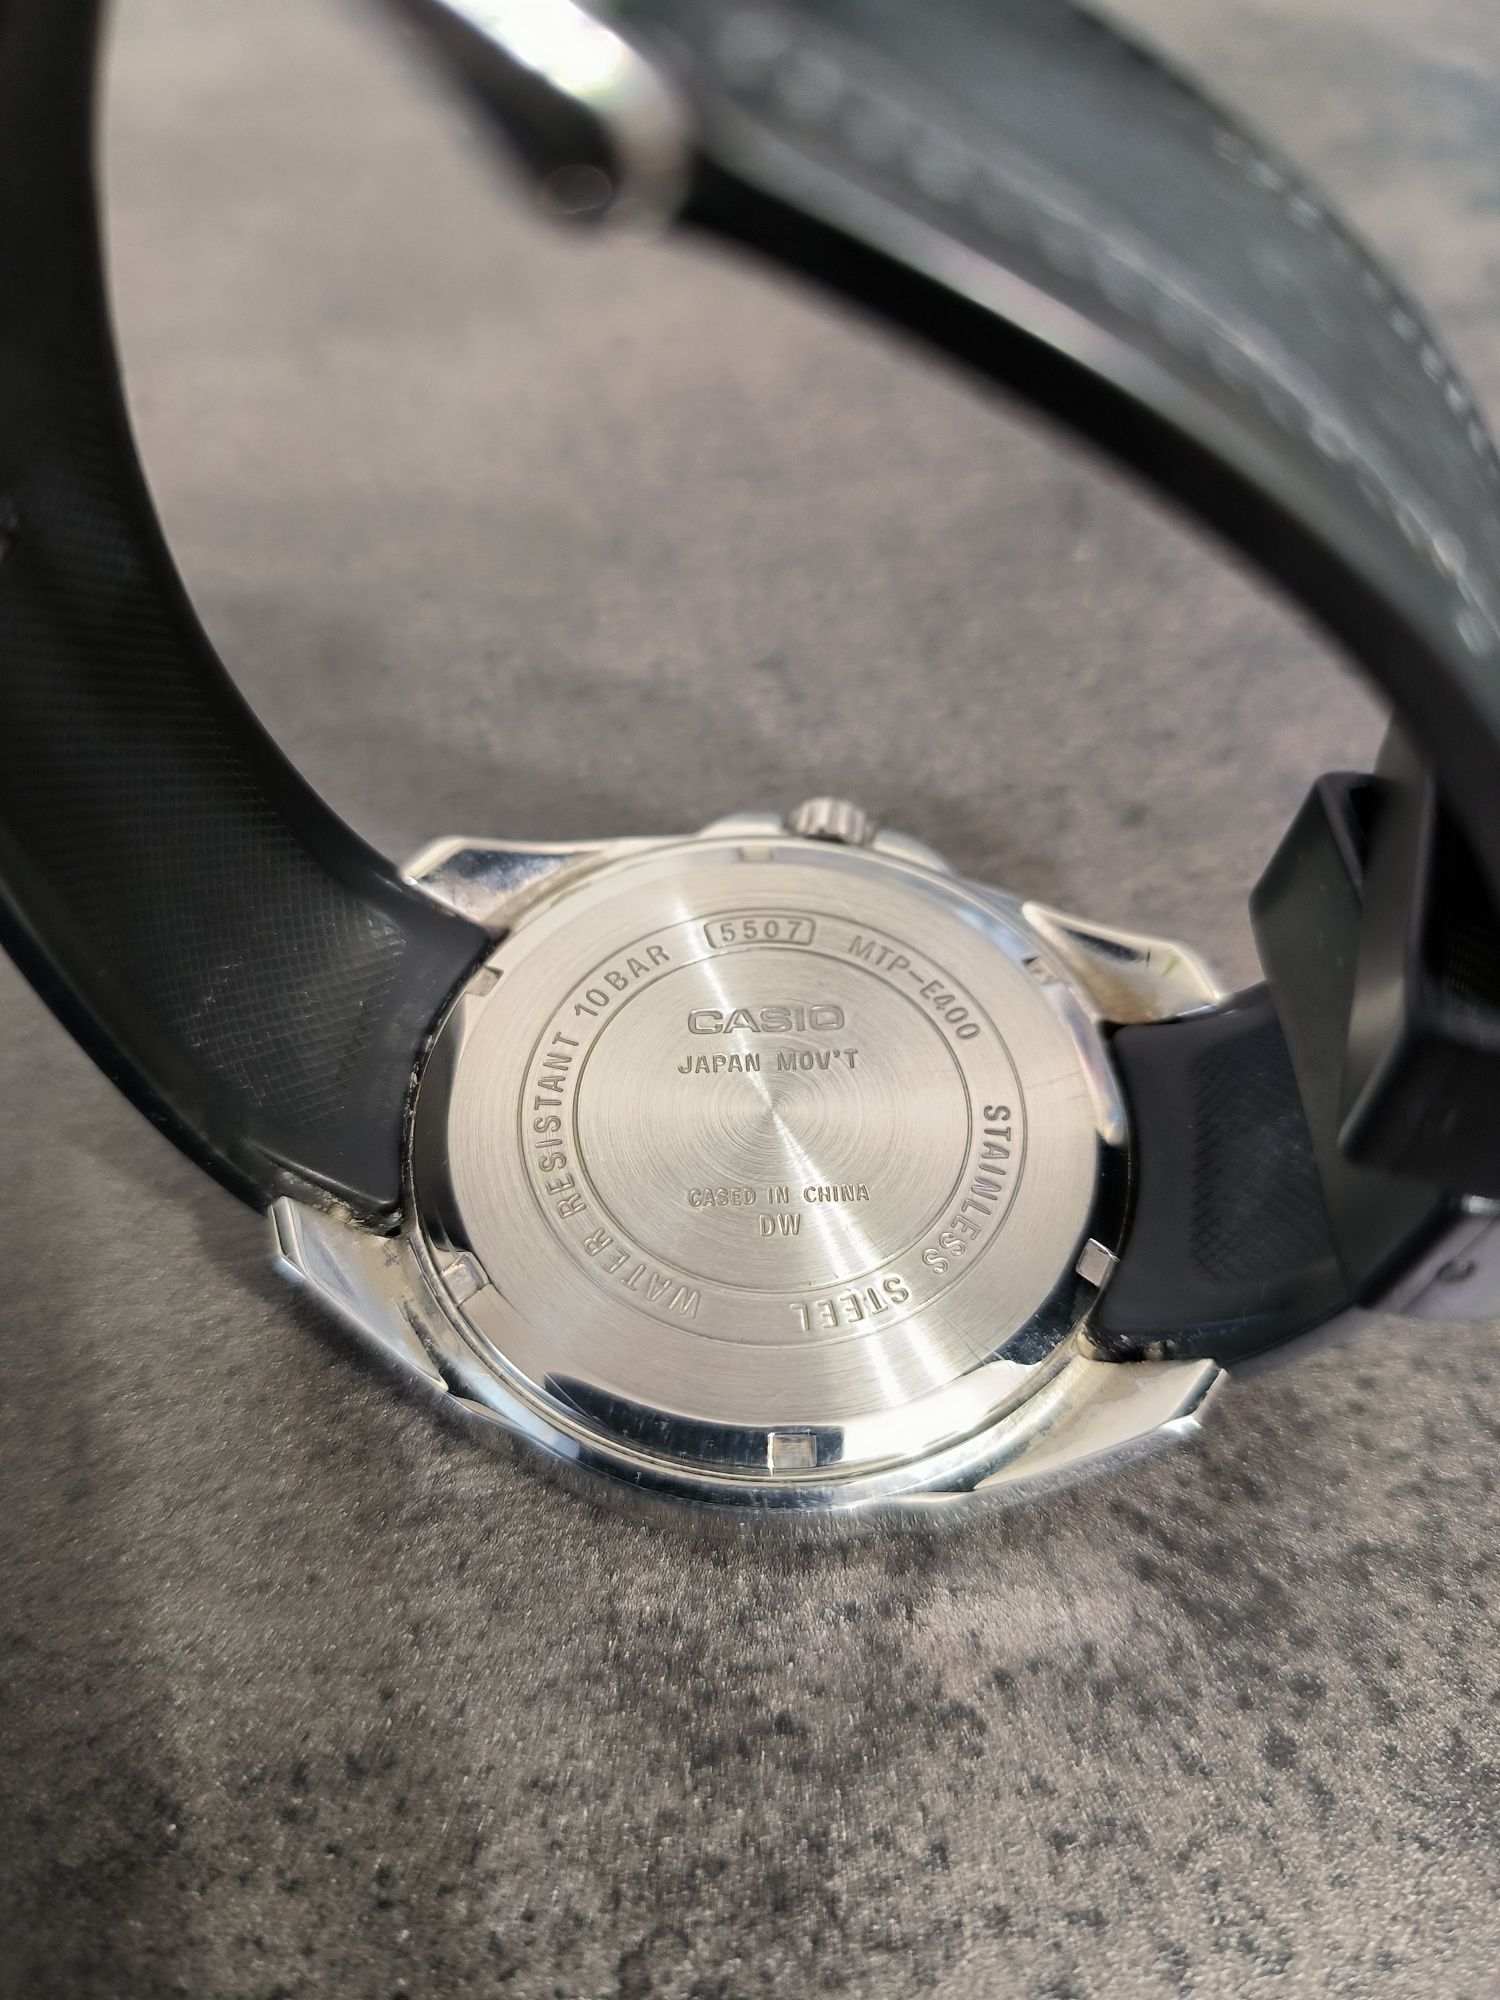 Zegarek Casio MTP -E400 , duży męski zegarek